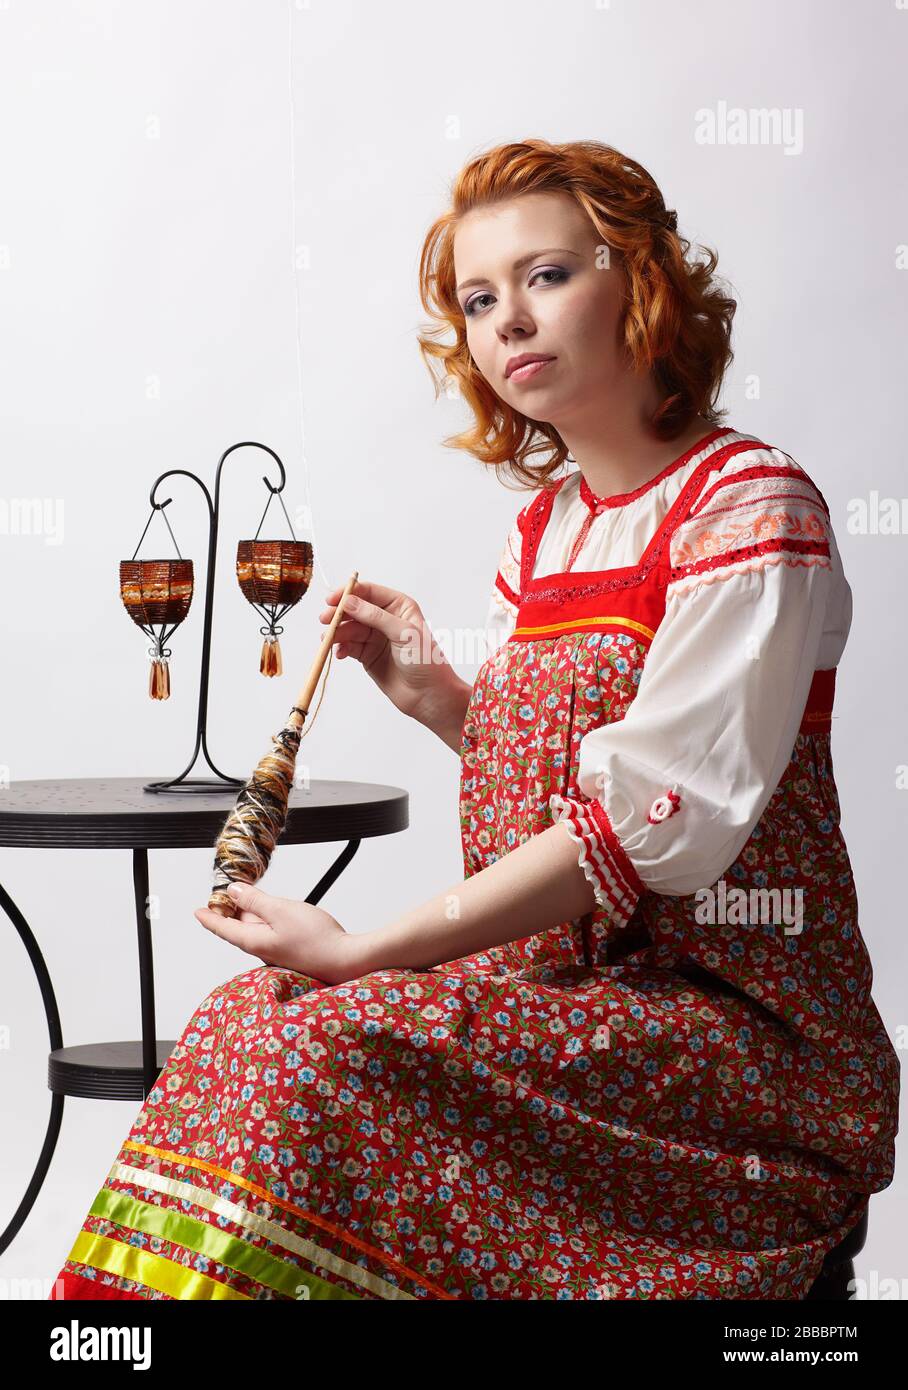 ritratto di bella ragazza slava redhead in tradizionale abito folk russo con distaff Foto Stock